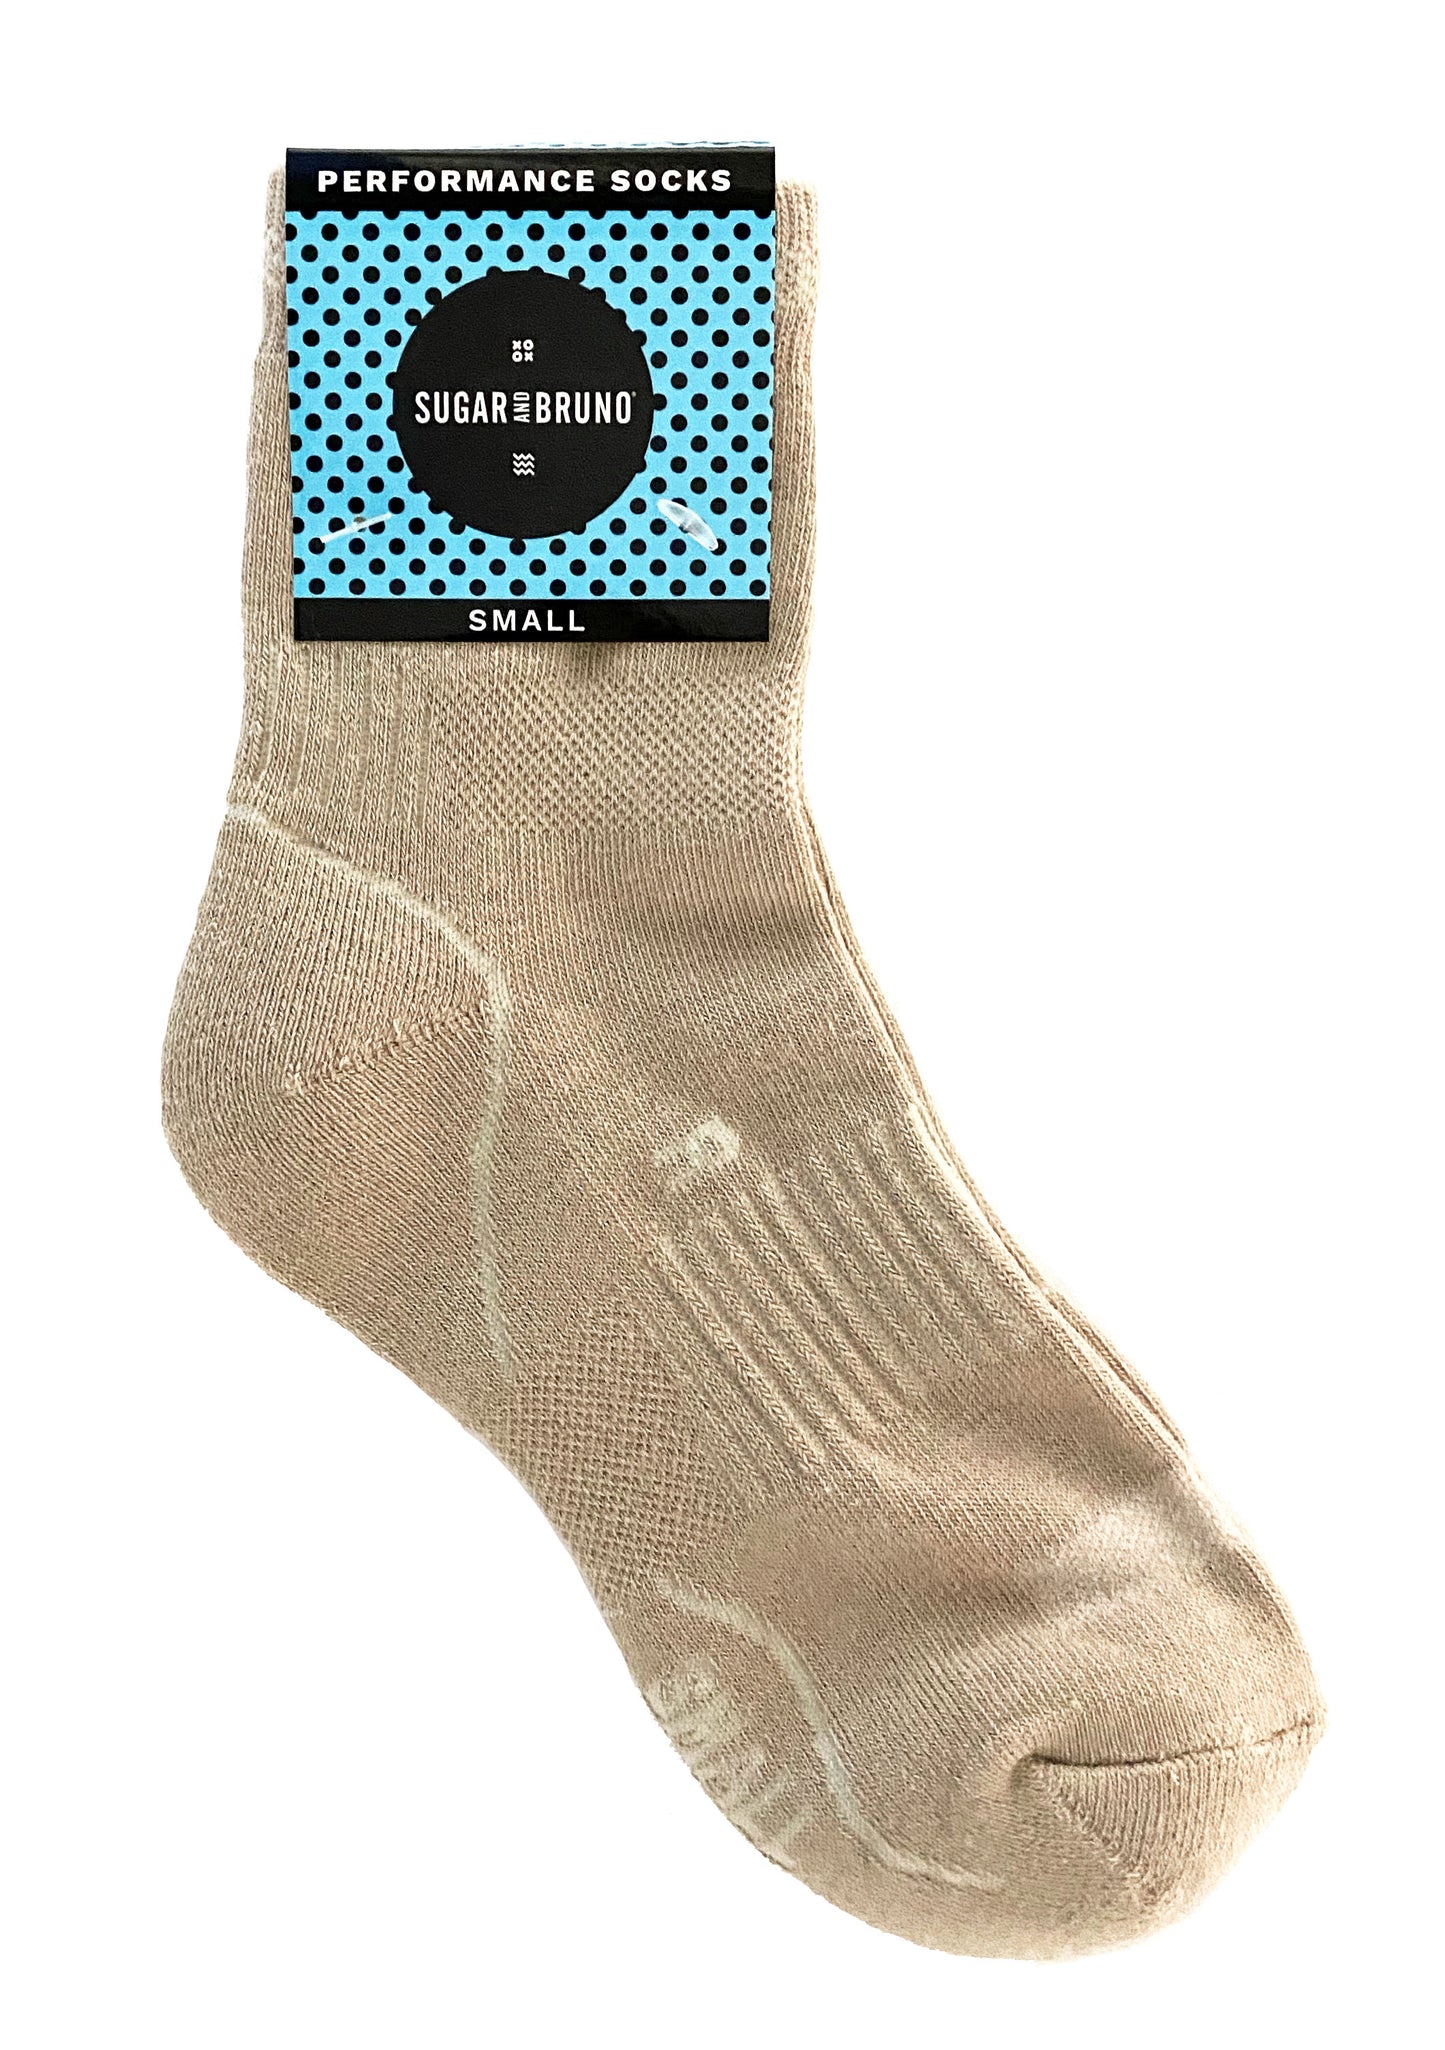 SB Performance Socks, Nude